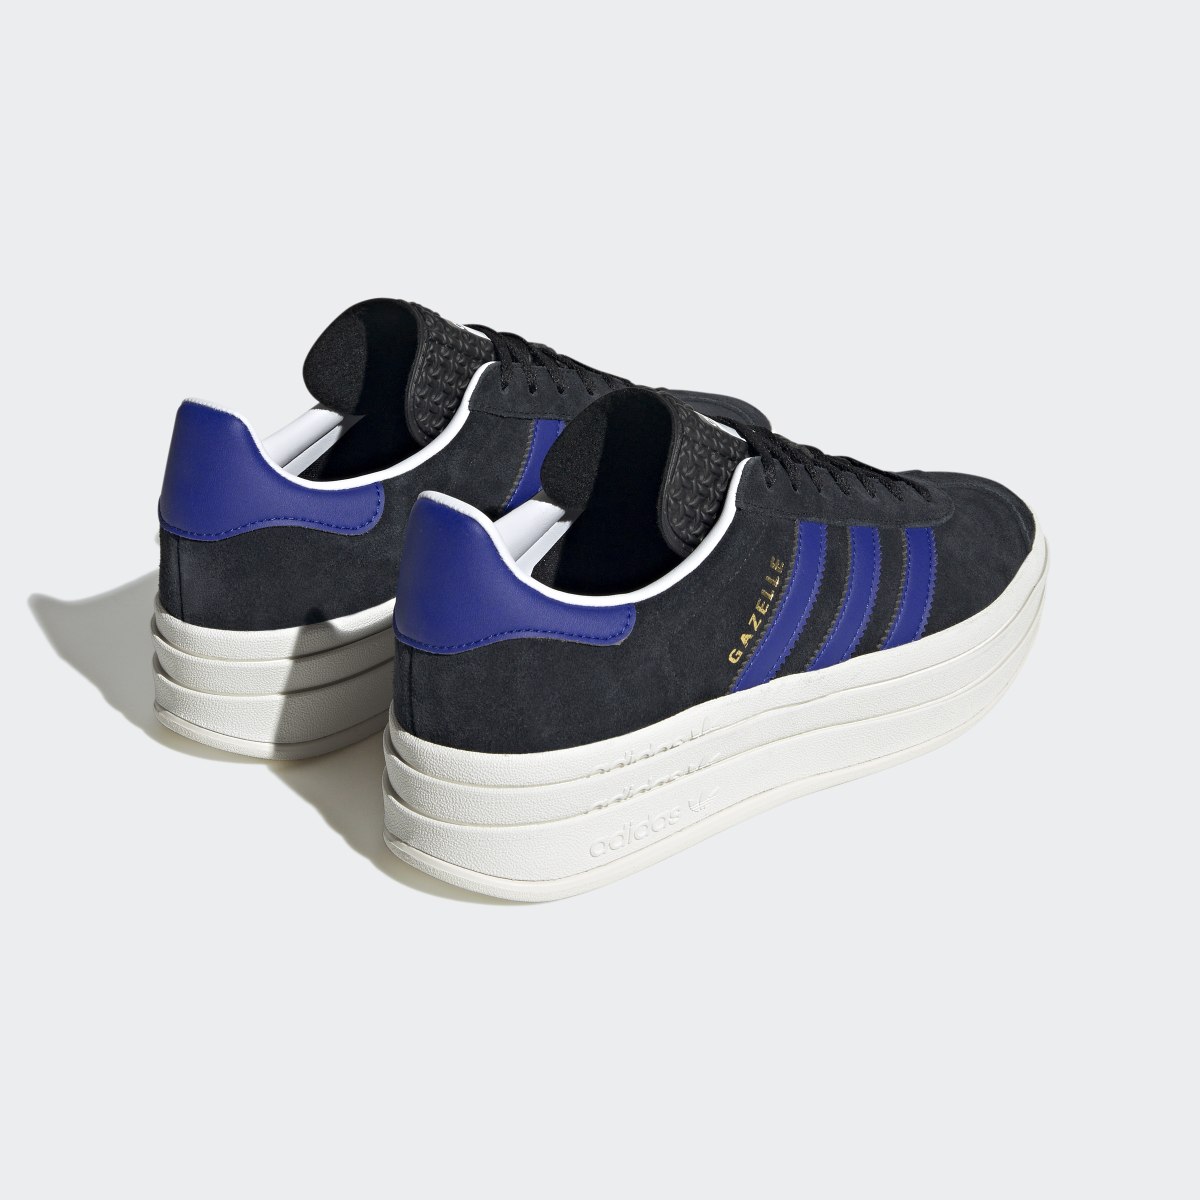 Adidas Gazelle Bold Shoes. 7